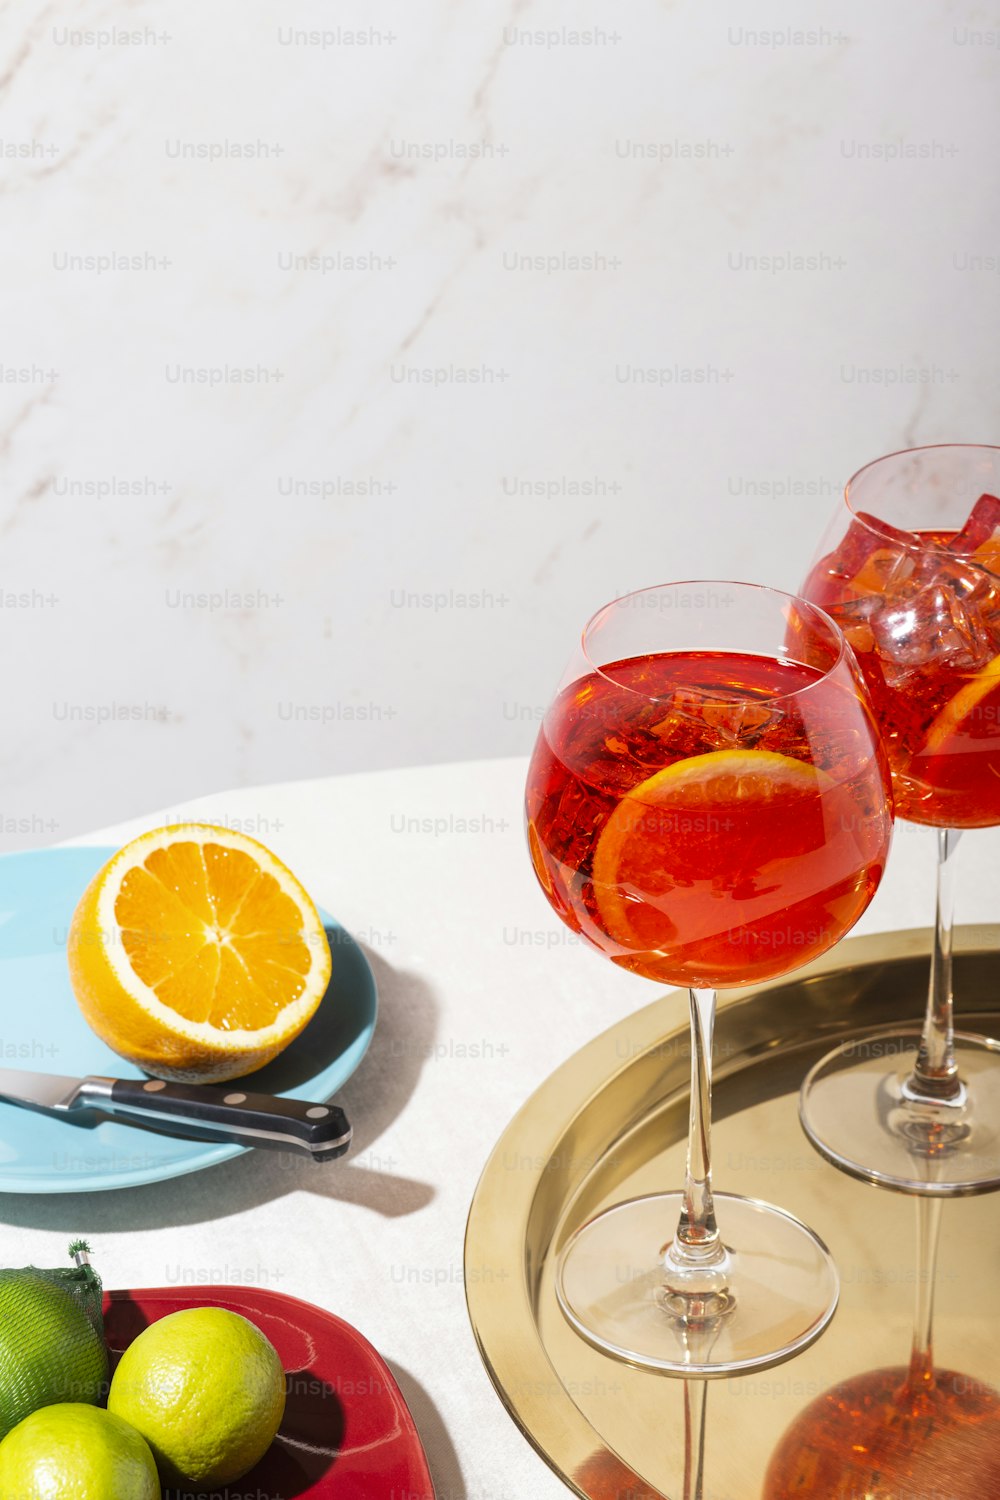 Spritz veneziano, un cocktail IBA con Prosecco o spumante bianco, bitter, soda, ghiaccio e una fetta d'arancia, in un calix su un tavolo, stile grafico pop